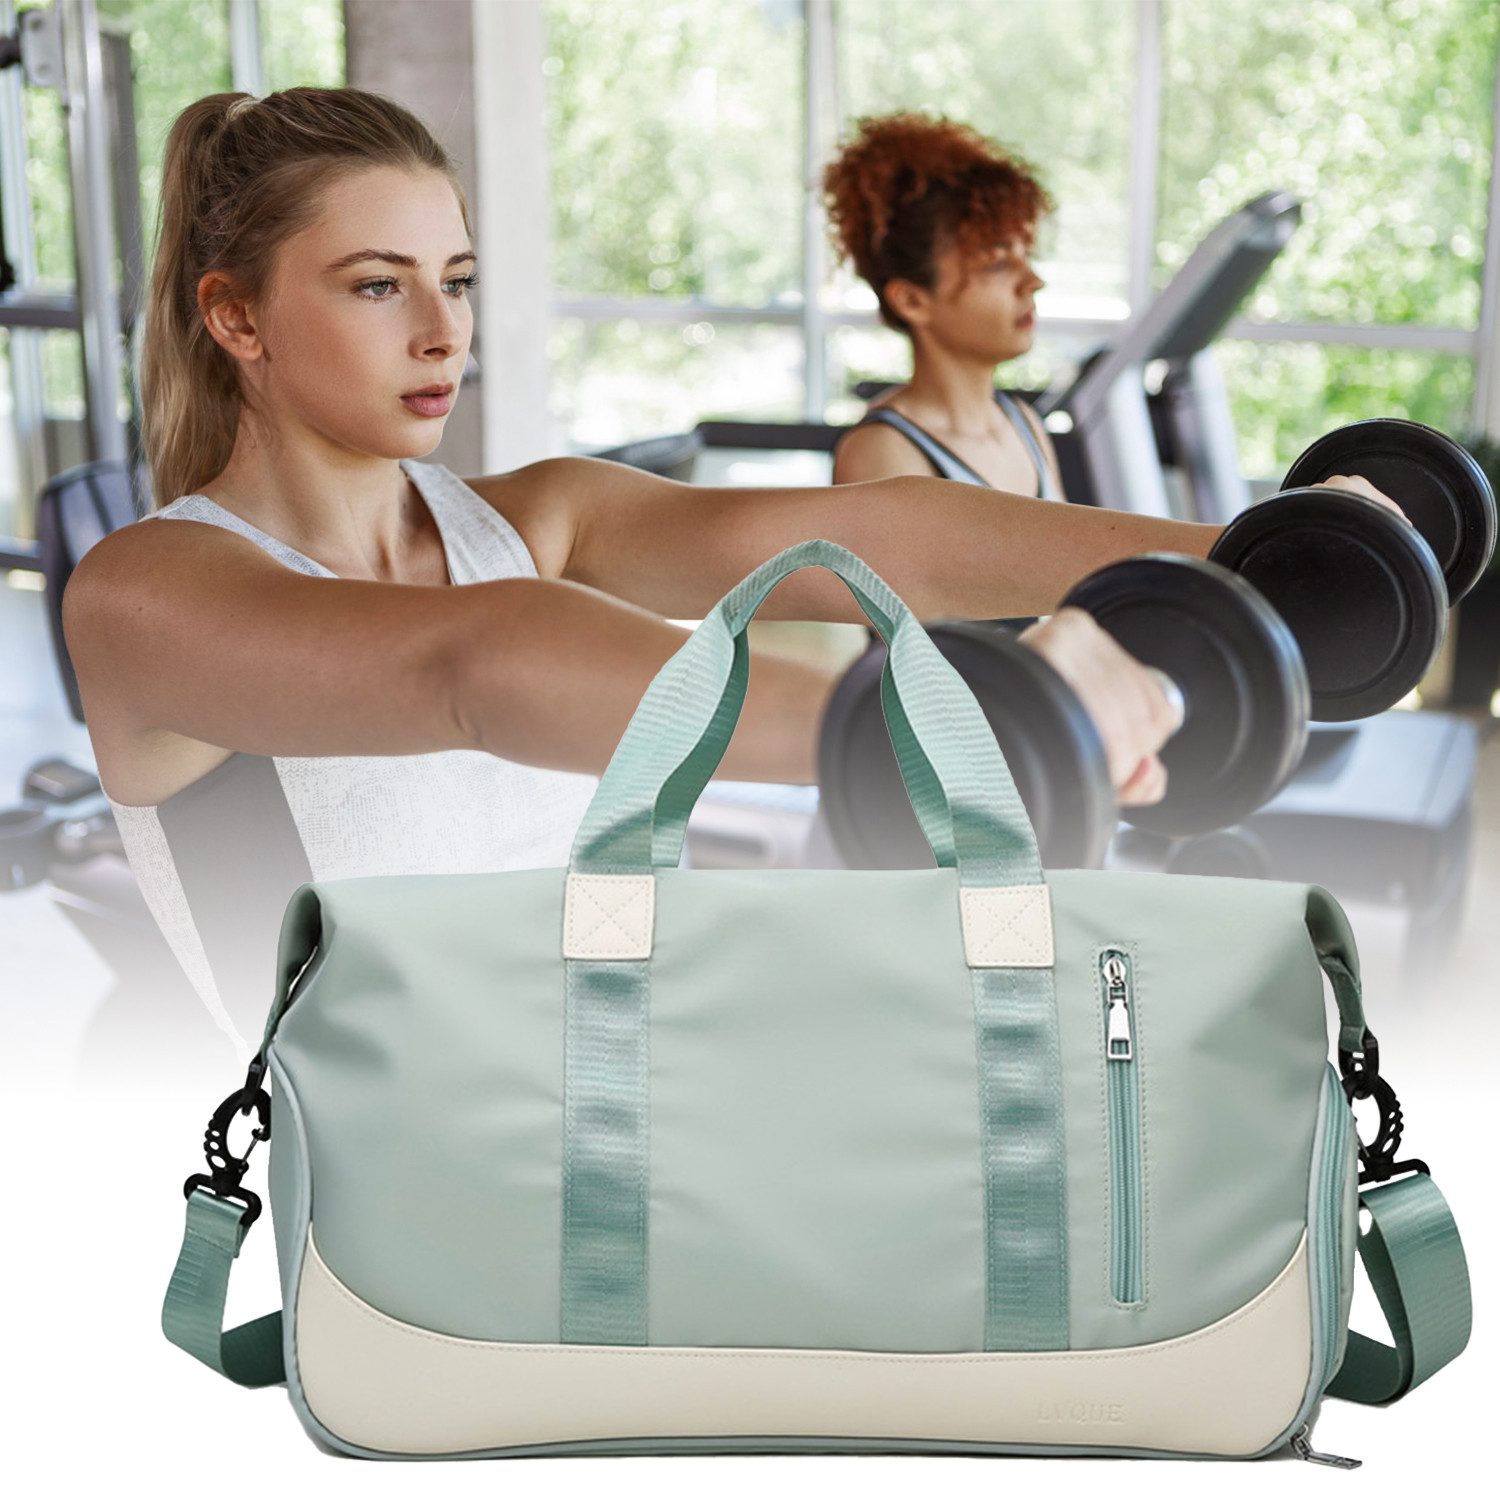 Masbekte Sporttasche Reisetasche mit Schuhfach & Nassfach Trainingstasche Freizeittasche, Schultergurt, für Yoga, Schwimmen, Tourismus, Fitness